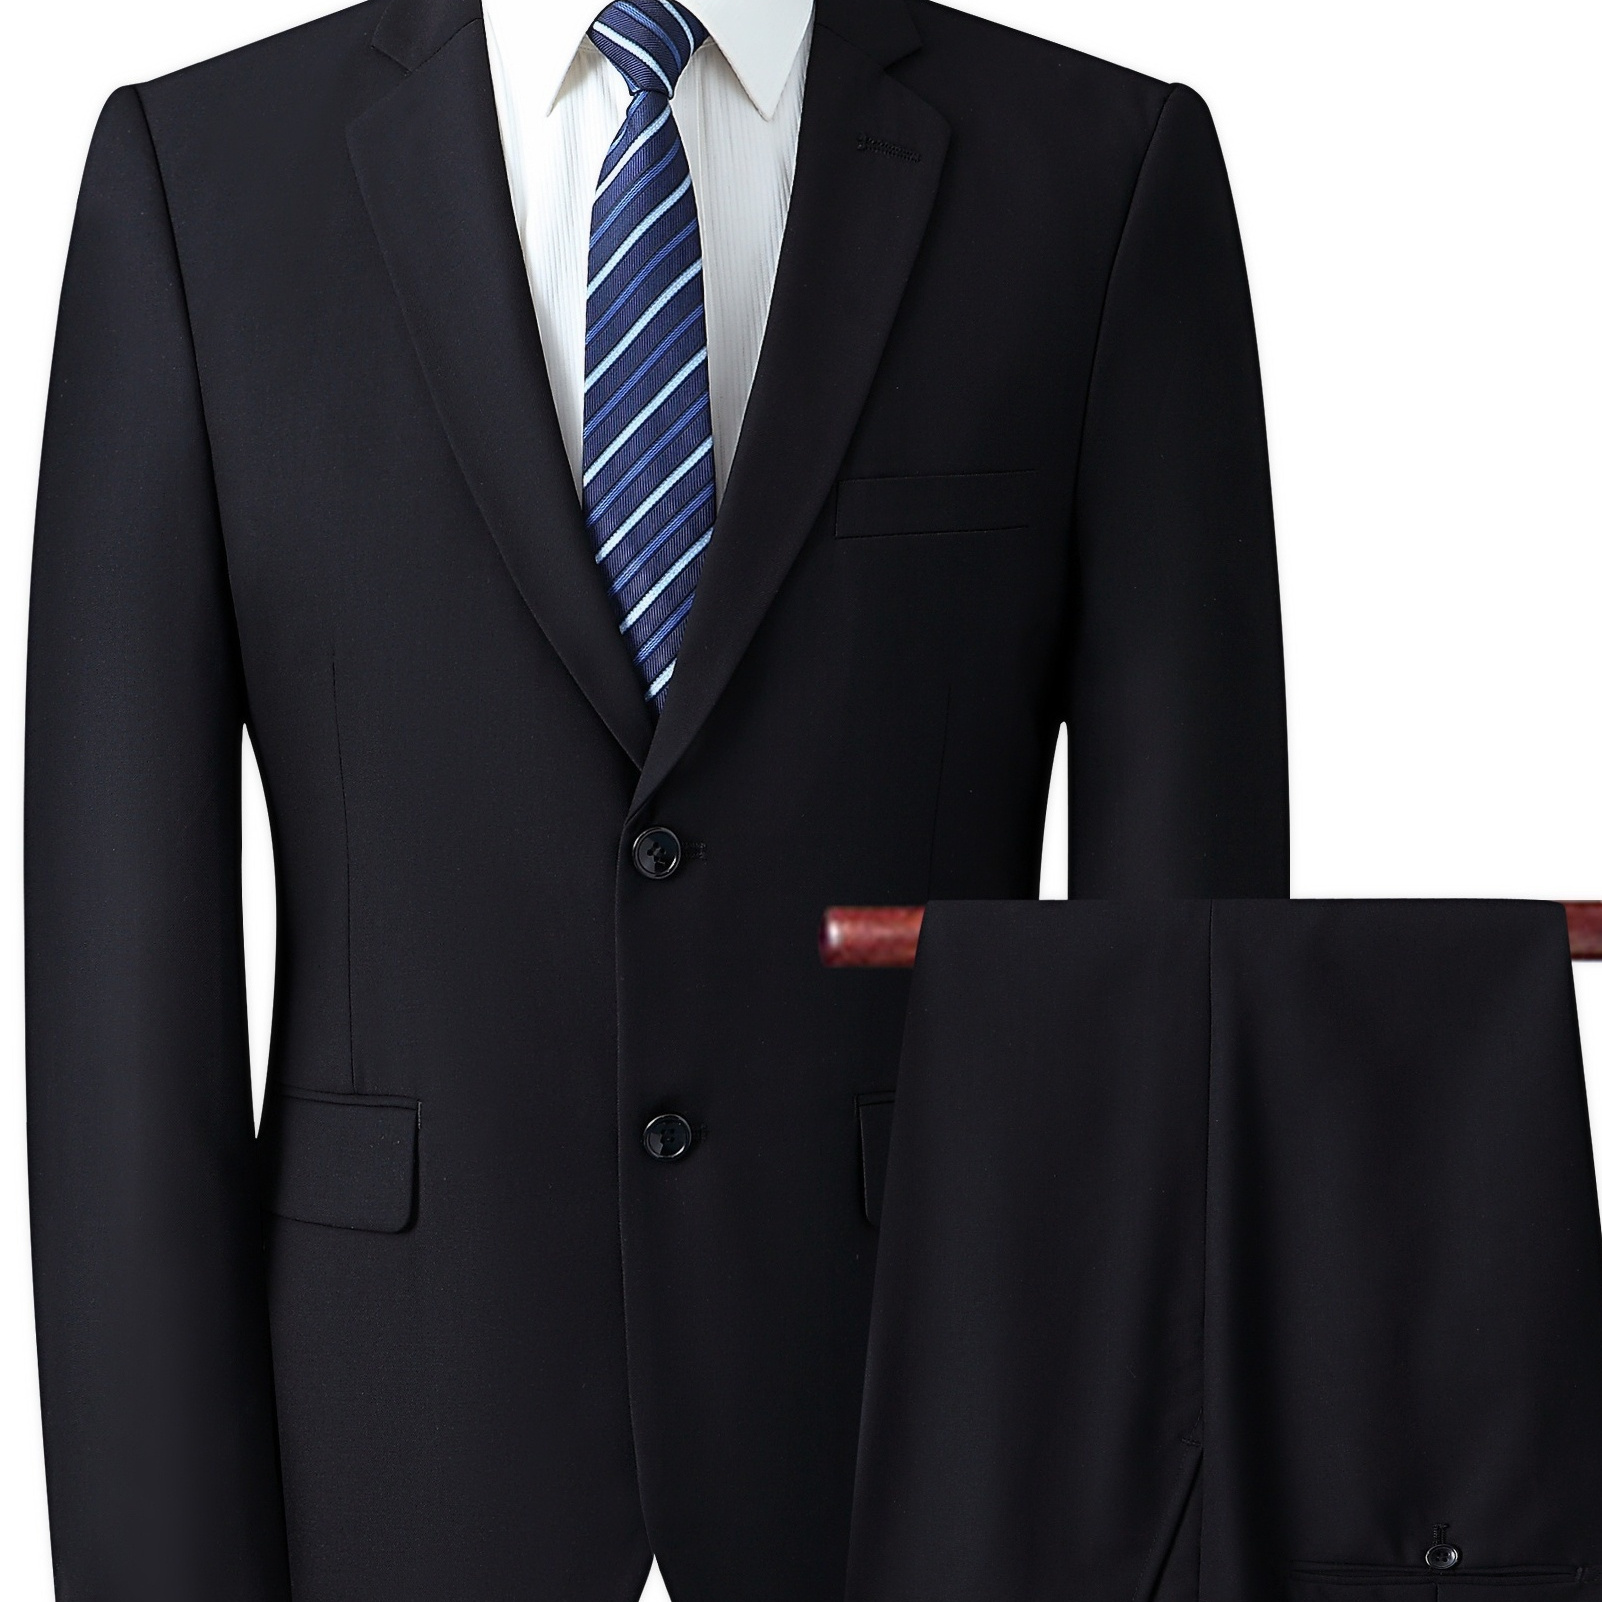 

Formal 2 Pieces Set, Men's 2 Button Suit Jacket & Dress Pants Suit Set For Business Dinner Wedding Party